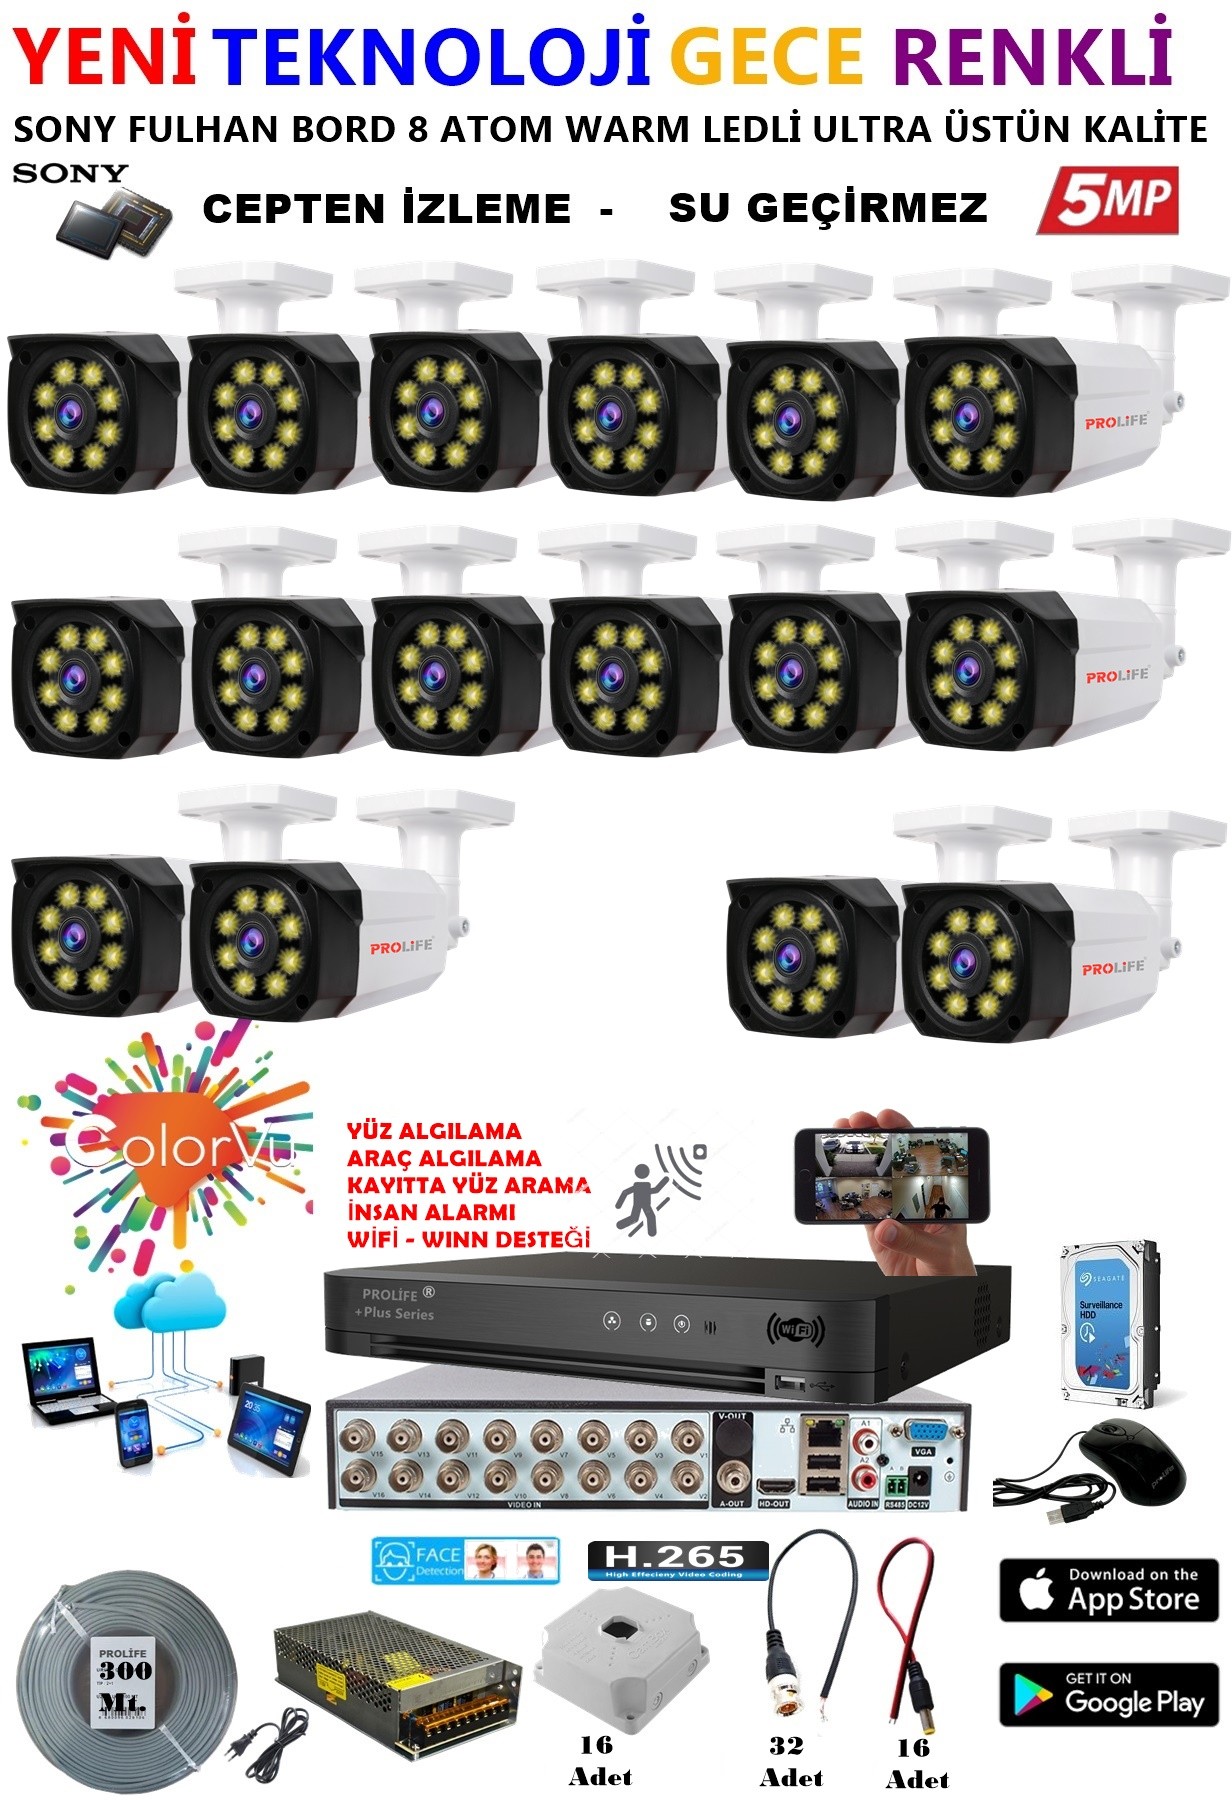 16 Kameralı 5 MP Gece Renkli Yapay Zeka Yüz ve Araç Algılamalı Olay Anı Bildirimli Kuruluma Hazır Kamera Seti